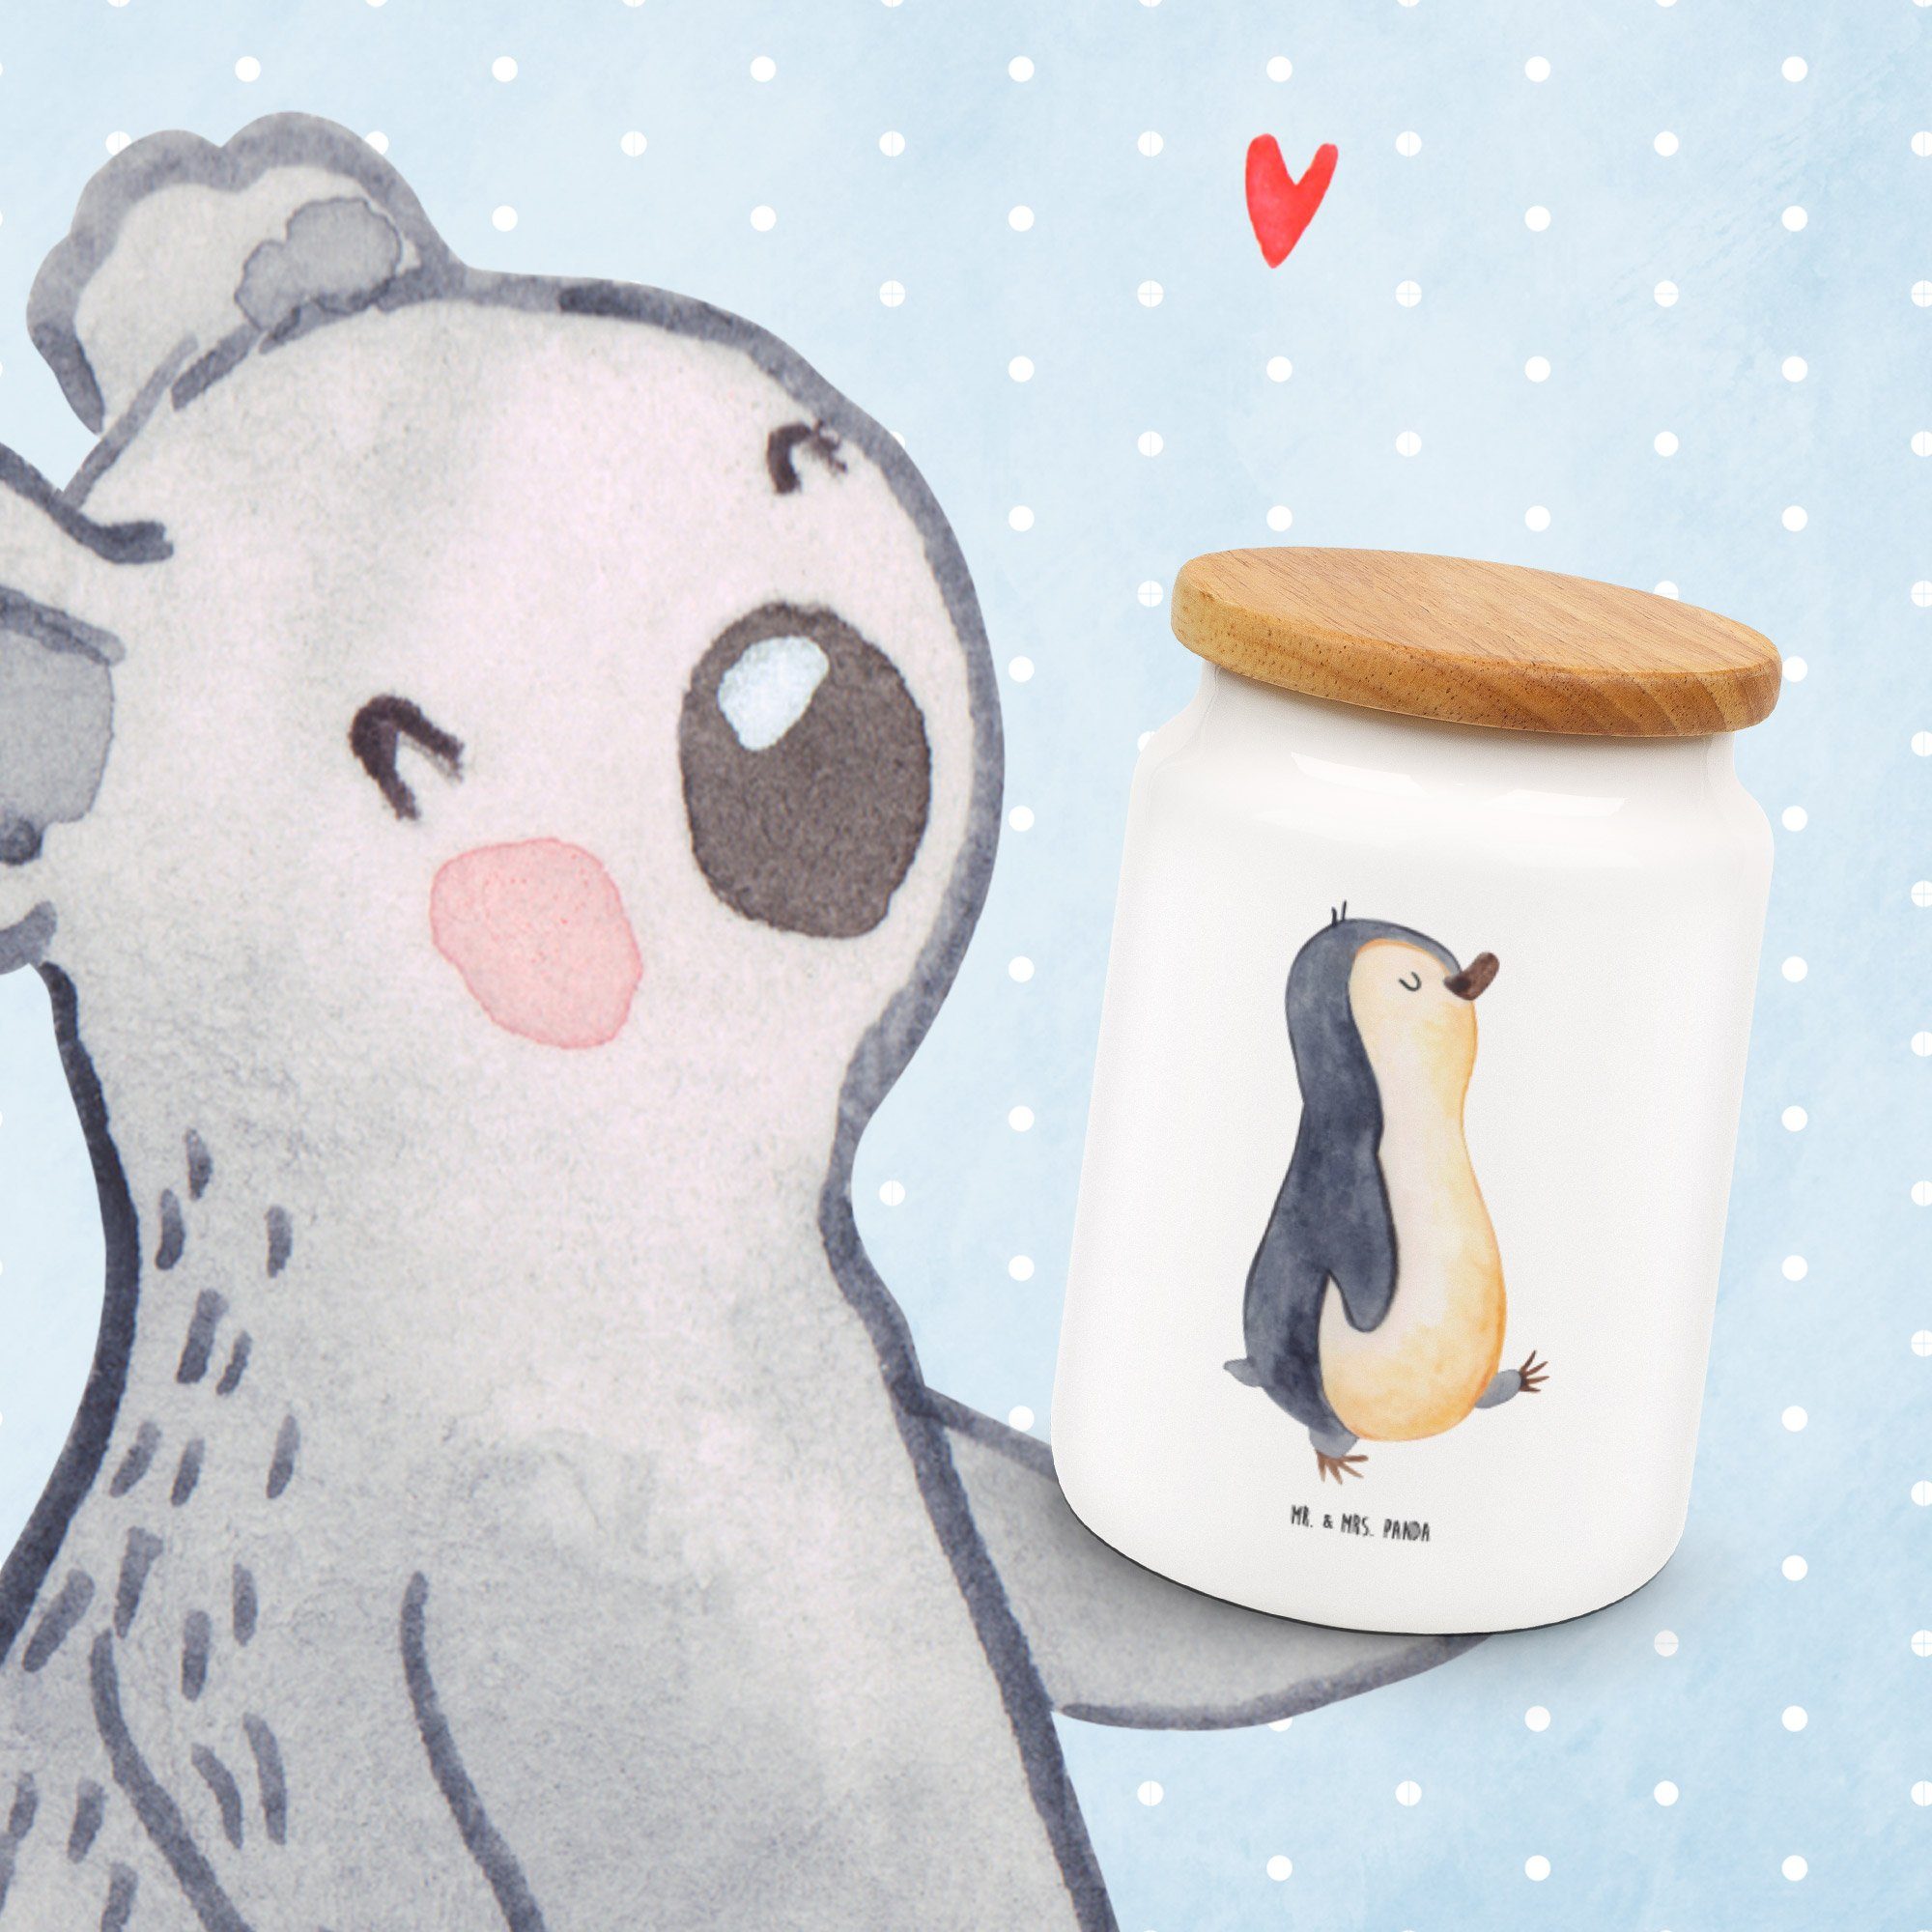 (1-tlg) Weiß Vorratsdose marschierend Pinguin - Bruder, Mrs. Lang, Mr. Panda spazieren, Geschenk, Keramik, & - Dose,